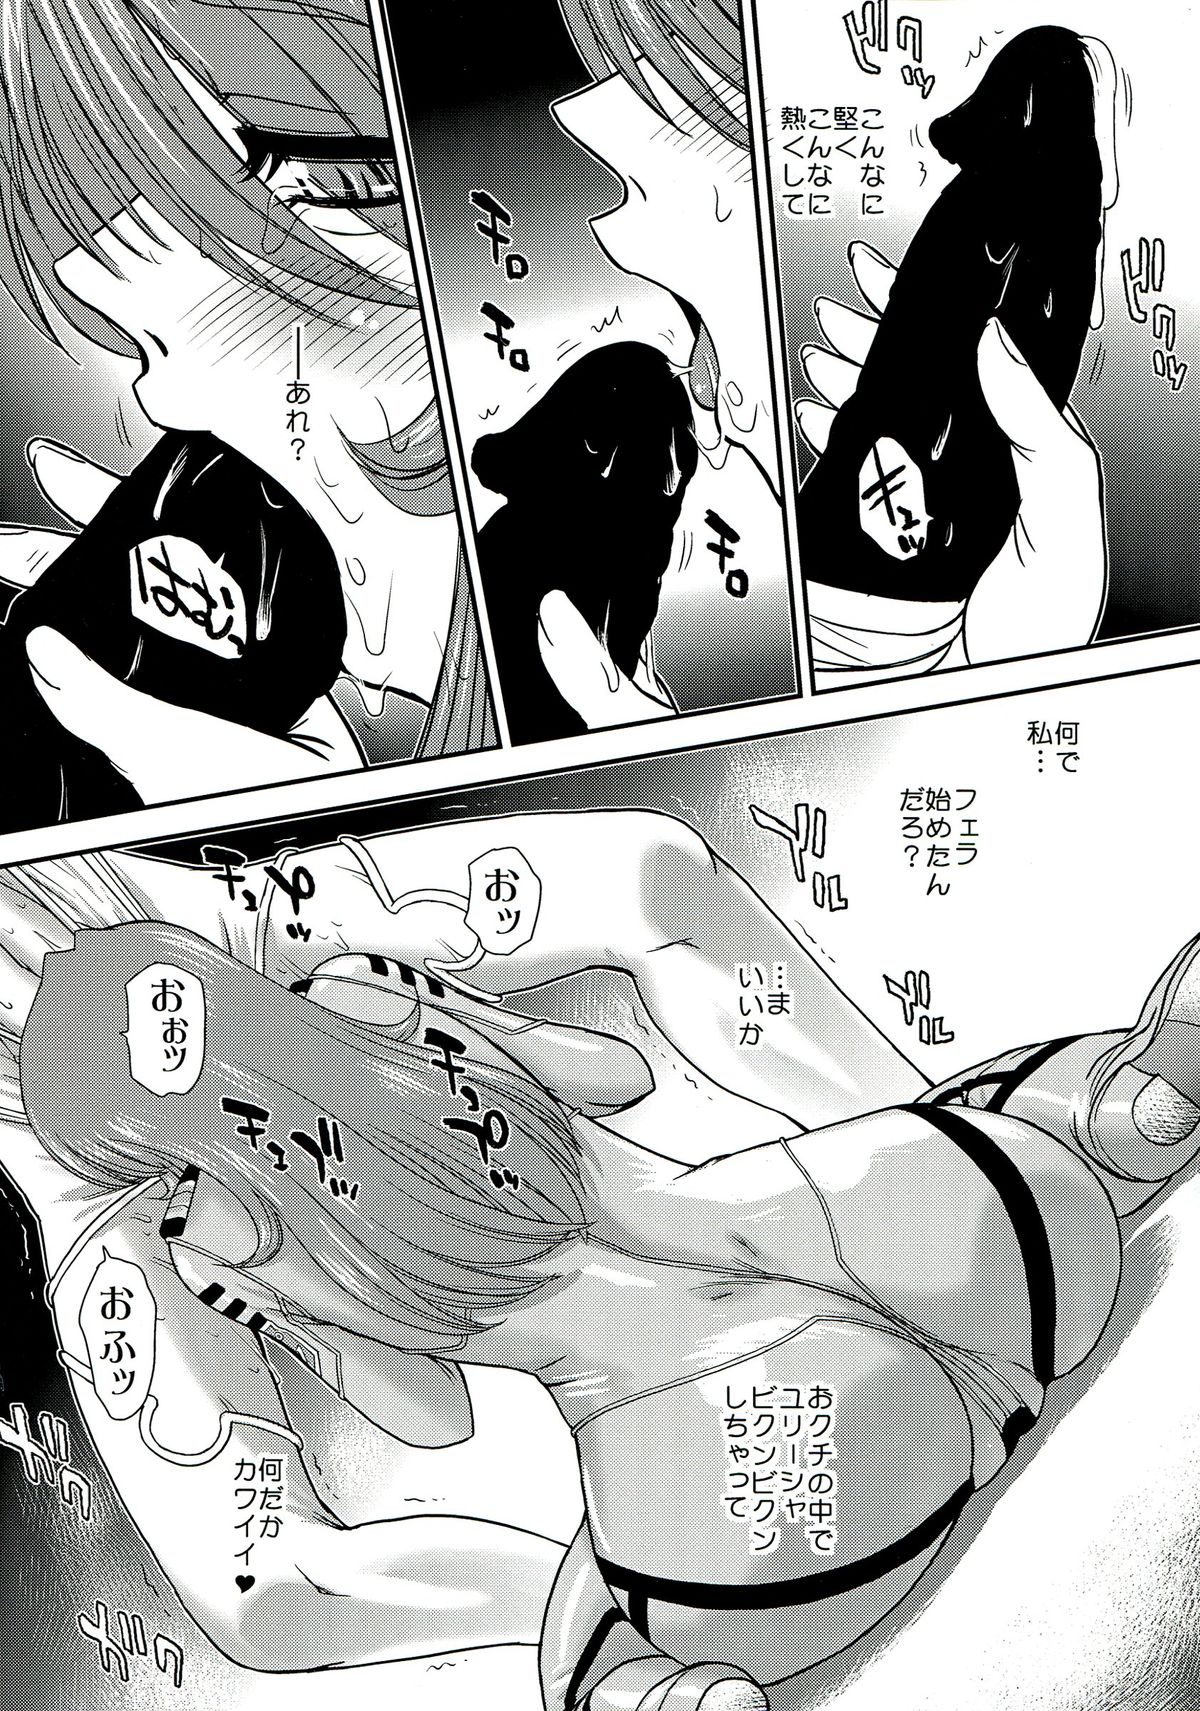 (C85) [Behind Moon (Q)] YAMATO 2199 Alternative - 2 Reputapouda Jinmon Shitsu (Space Battleship Yamato 2199) page 16 full